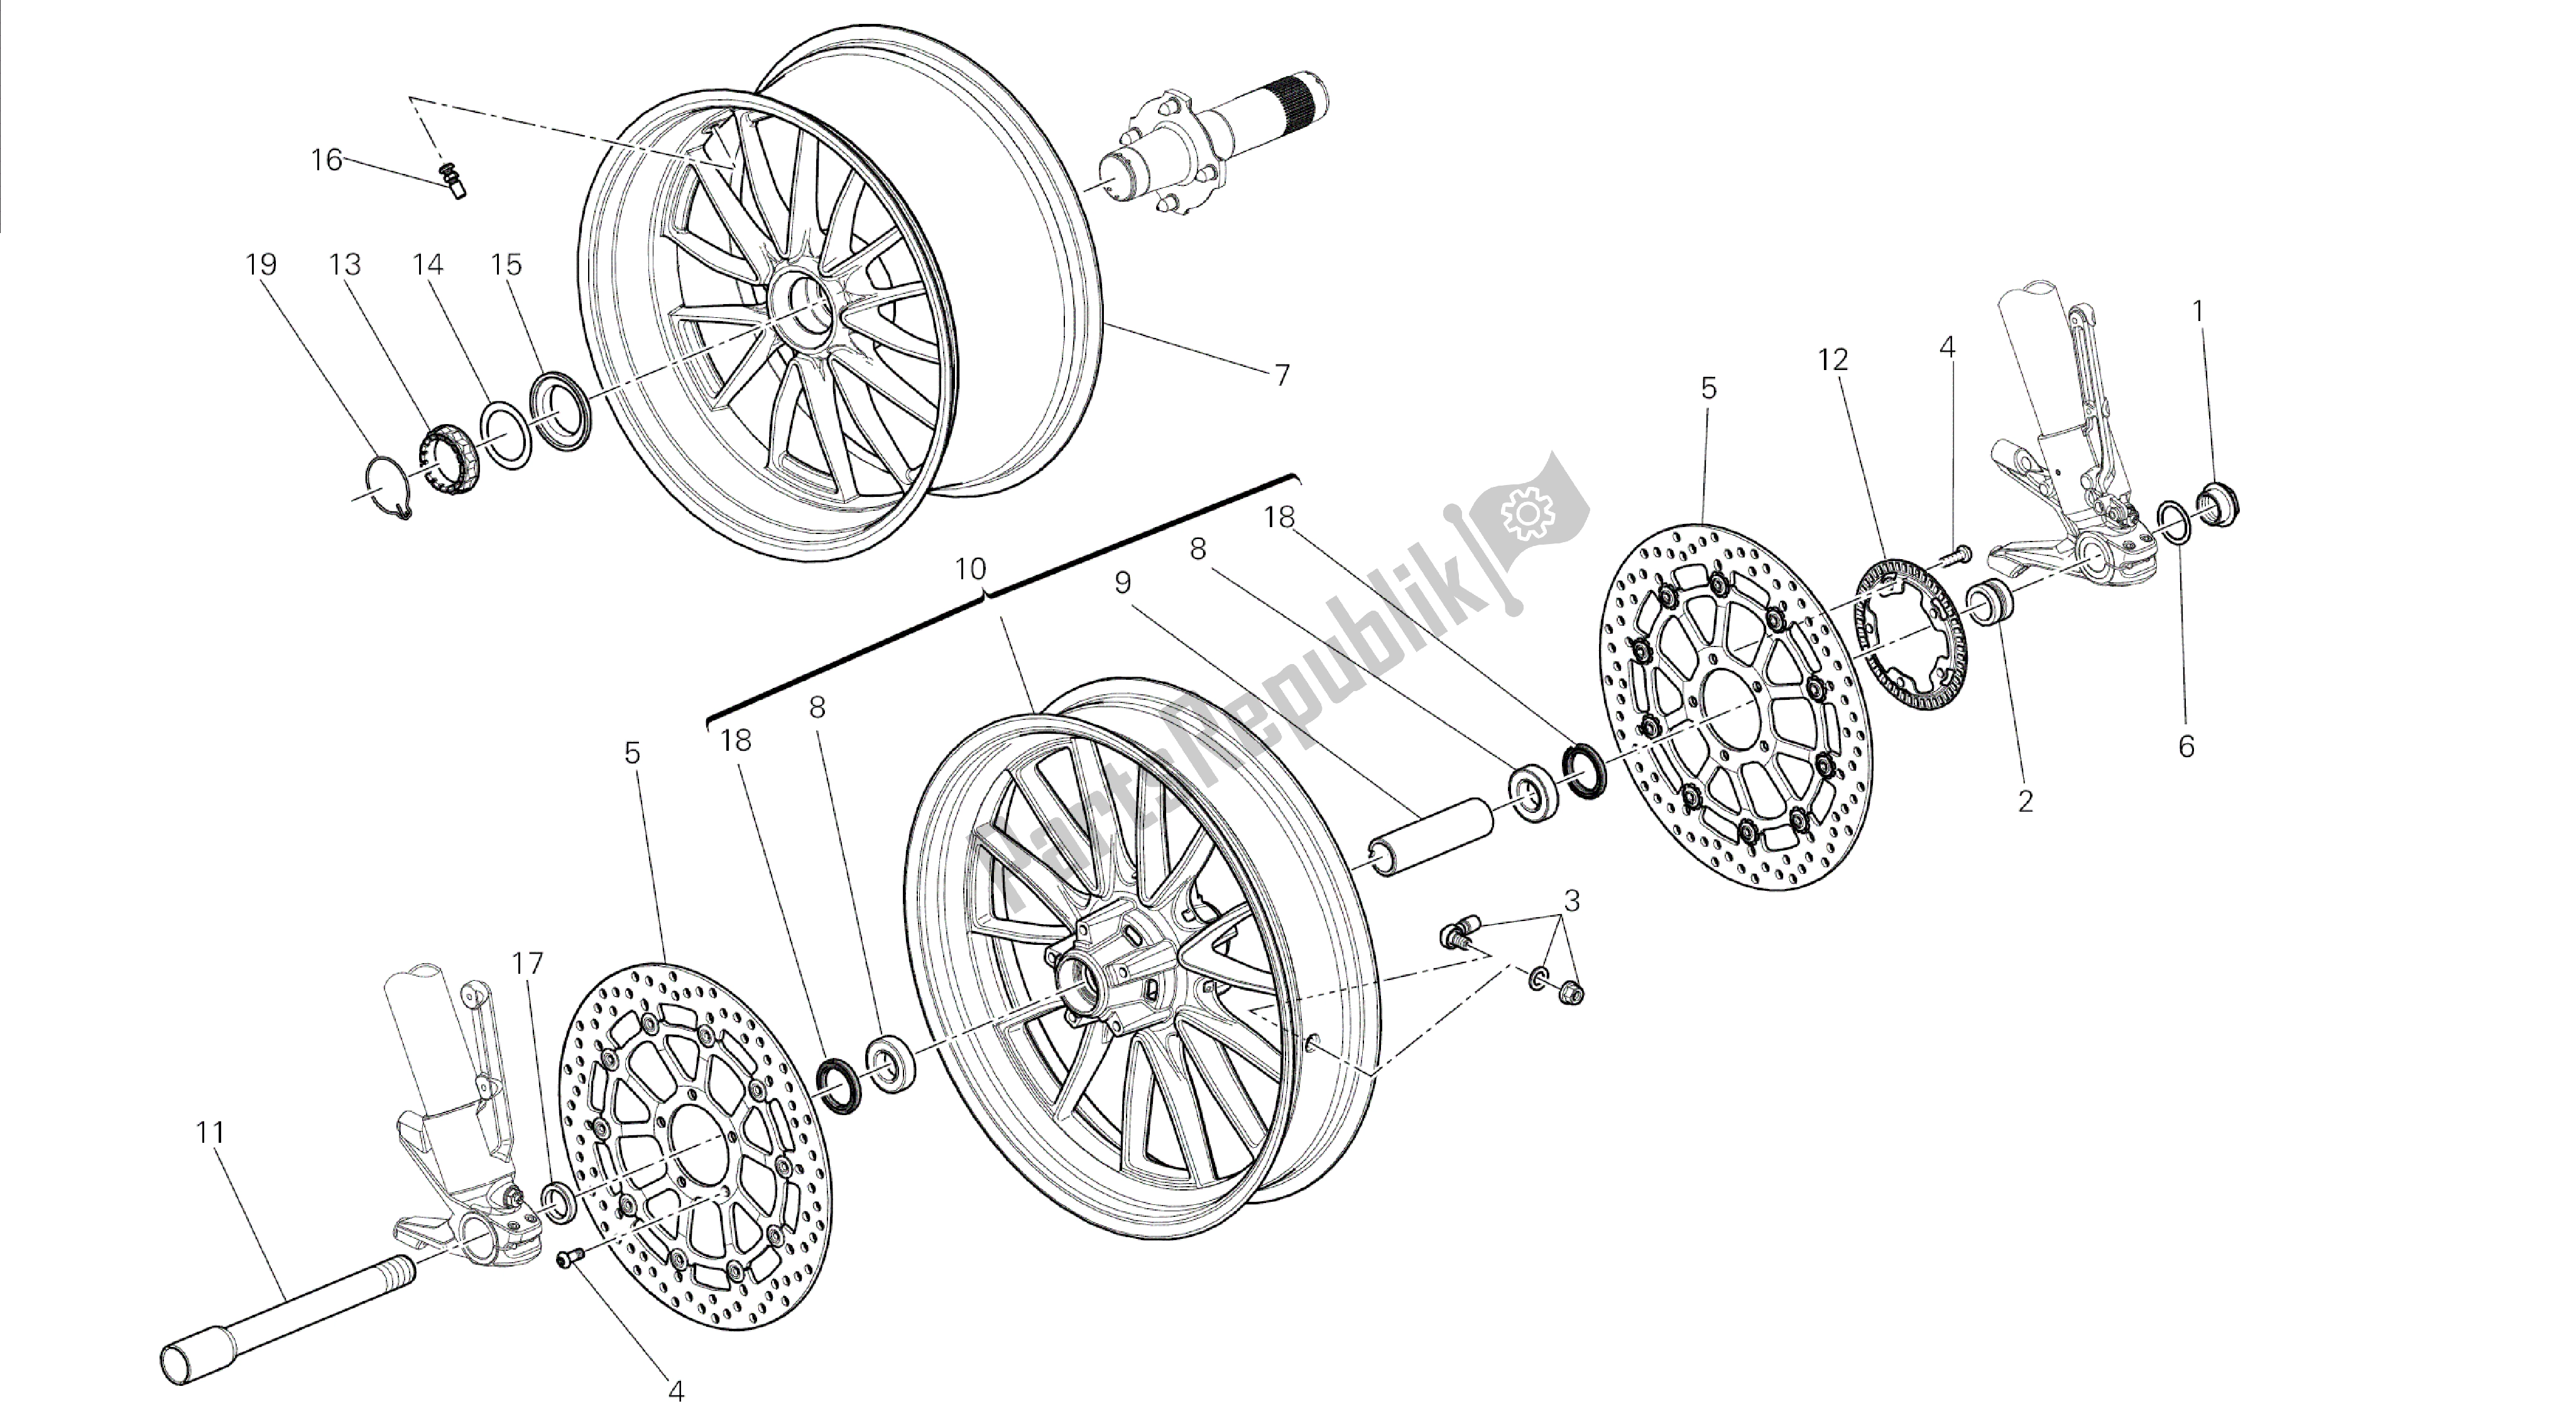 Todas las partes para Dibujo 026 - Marco De Grupo De Ruedas [mod: Dvl] de Ducati Diavel 1200 2014